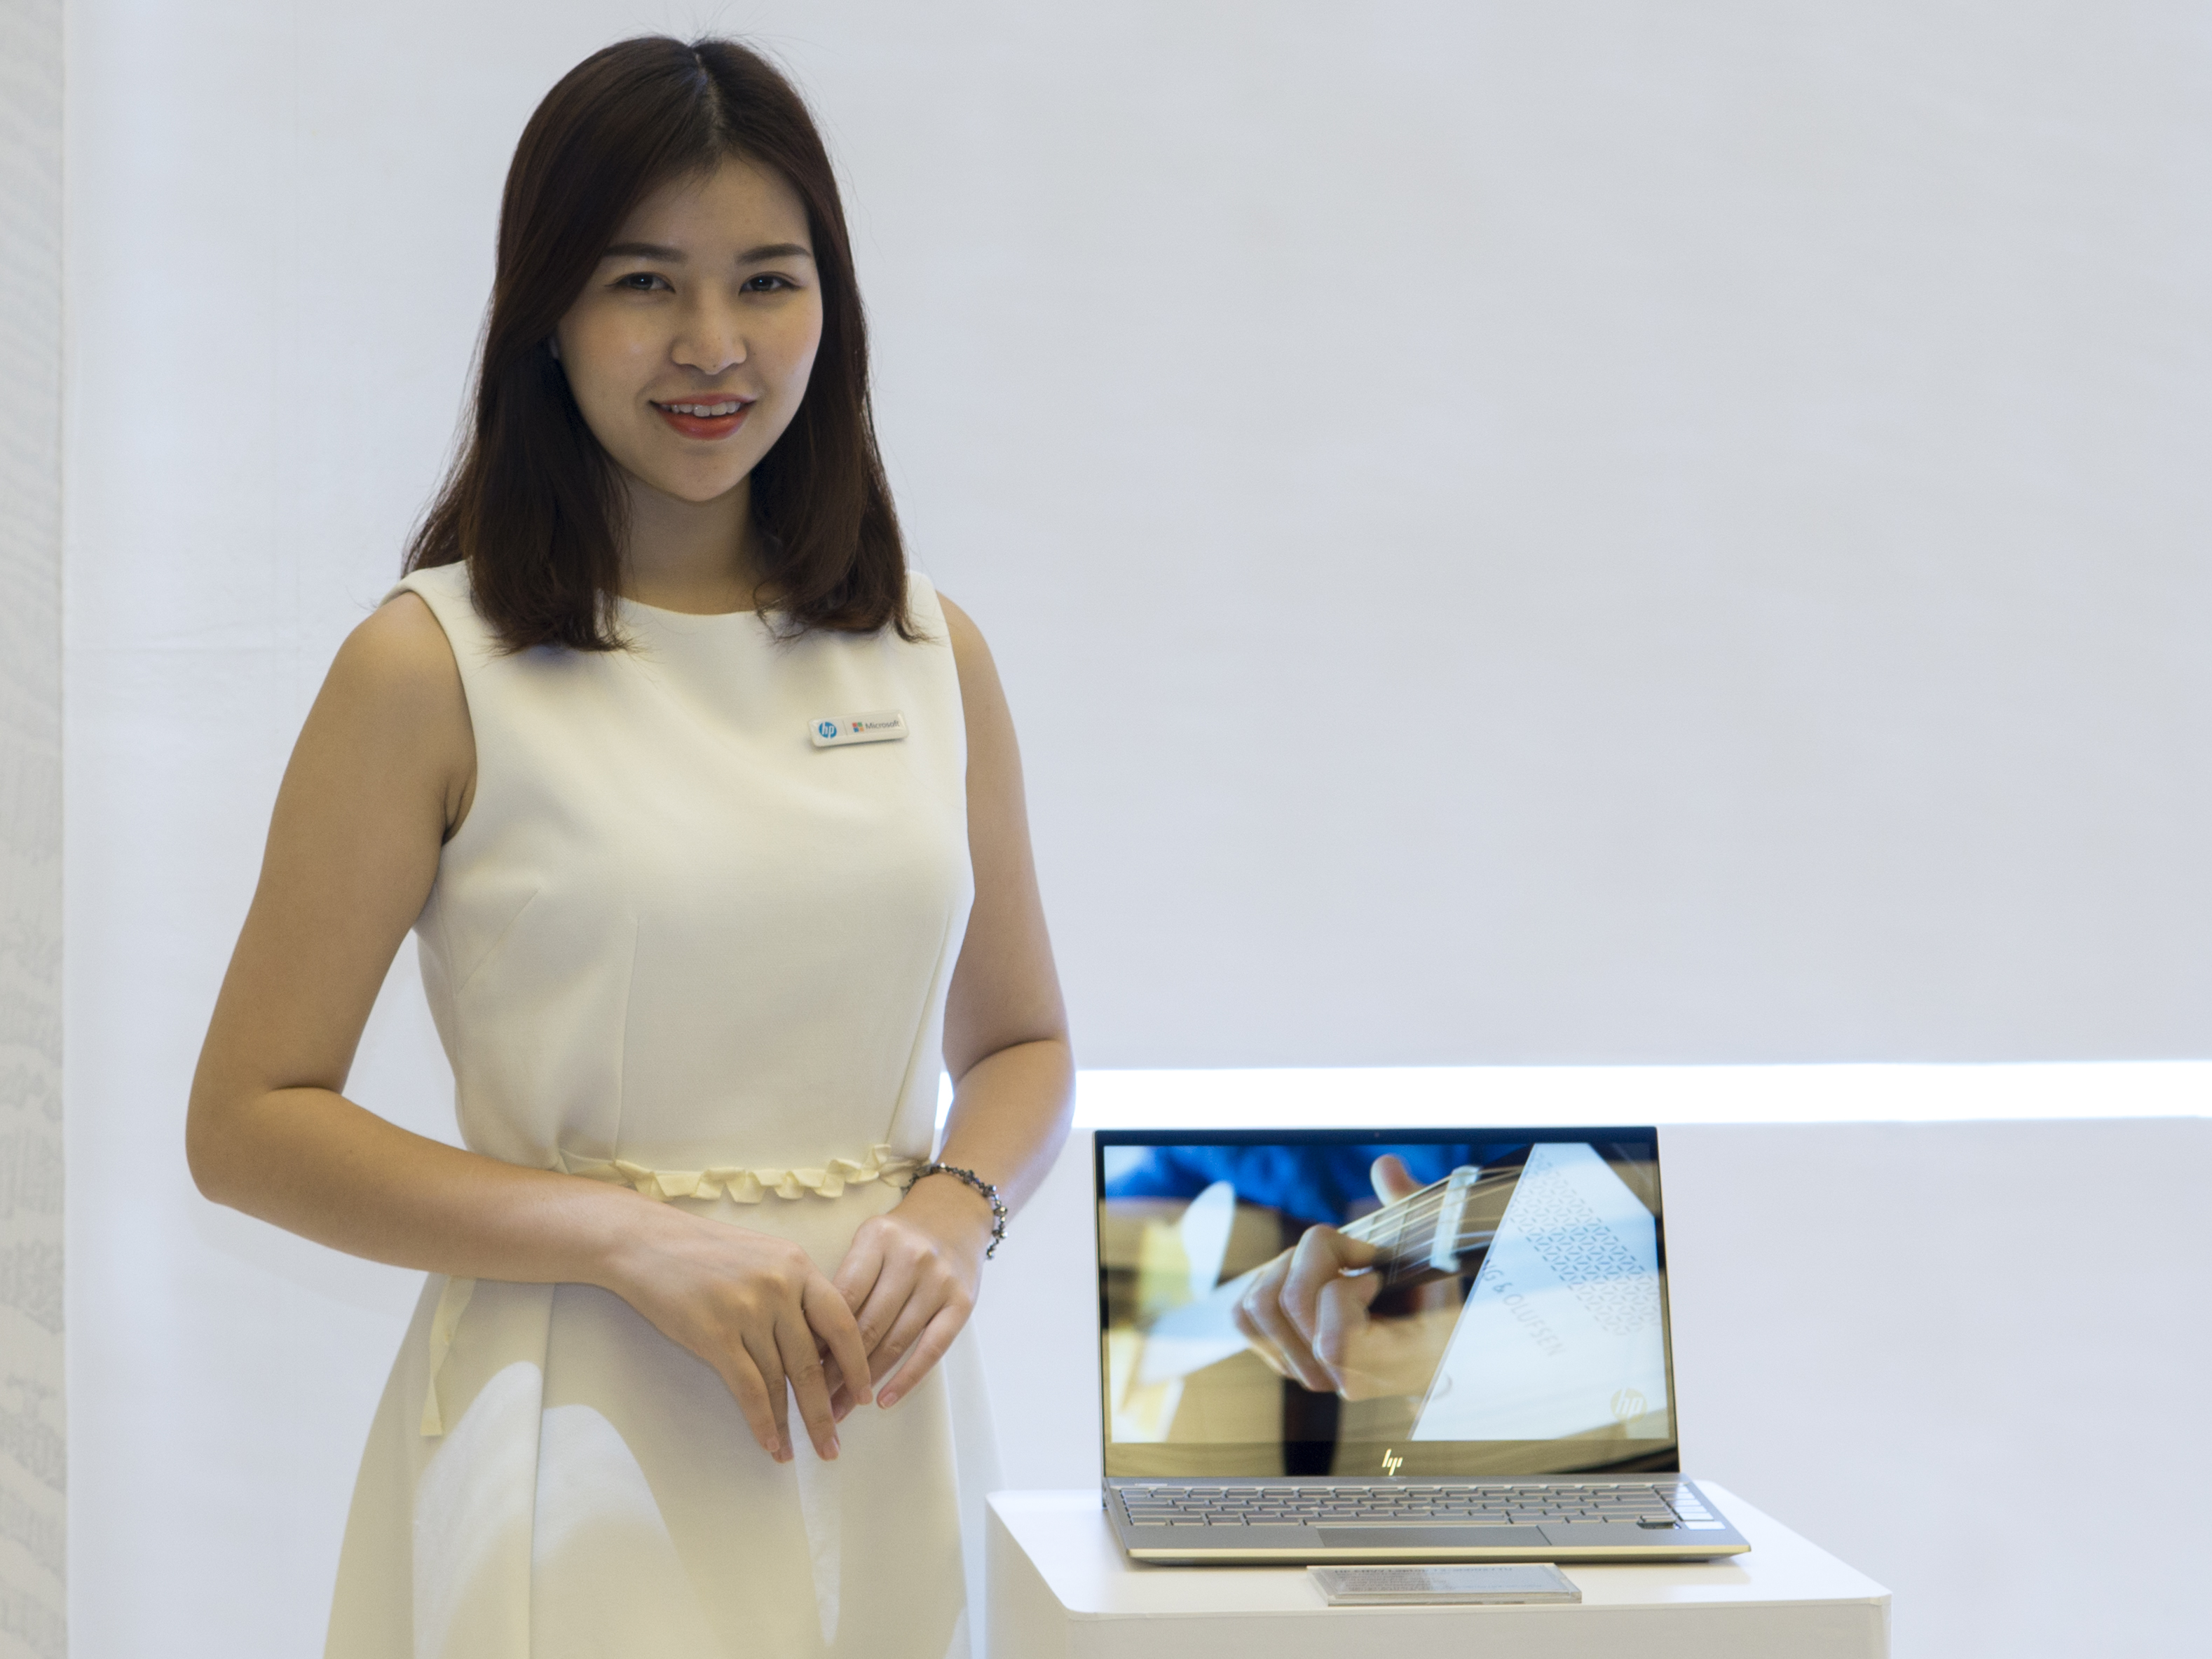 Cận cảnh laptop HP Envy 13 2018 siêu mỏng nhẹ giá từ 20,99 triệu đồng